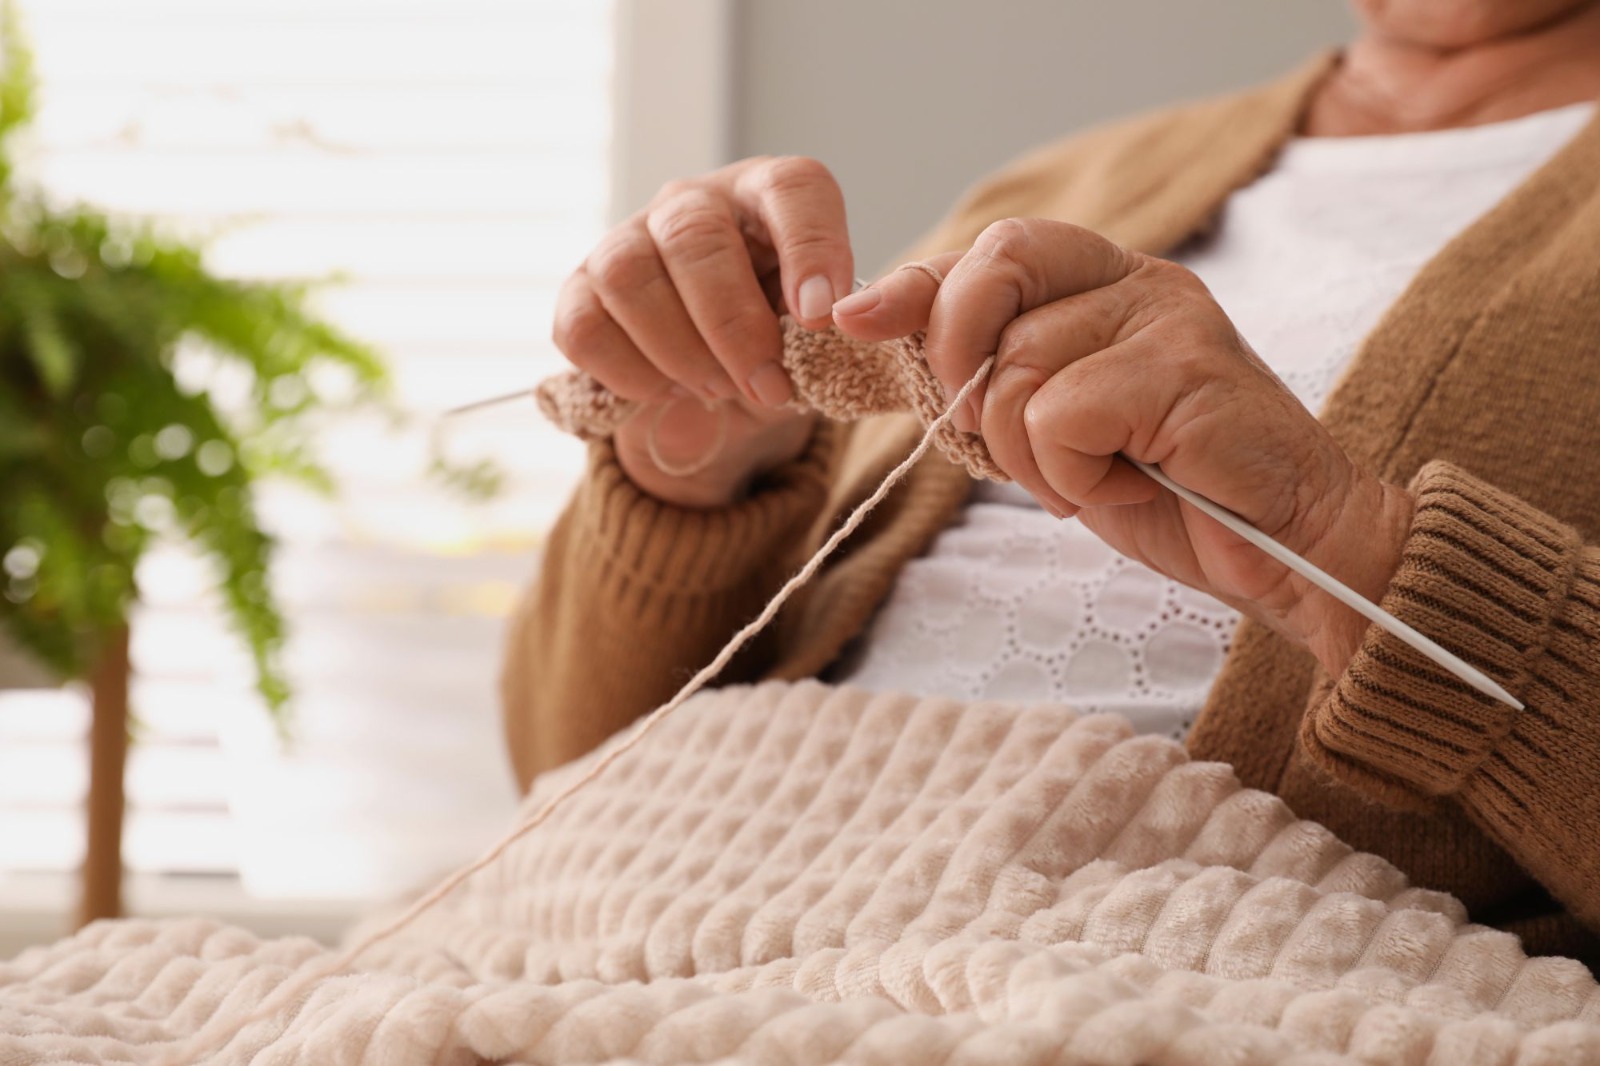 Bordar e tricotar, atividades que podem reduzir o estresse e promover bem-estar